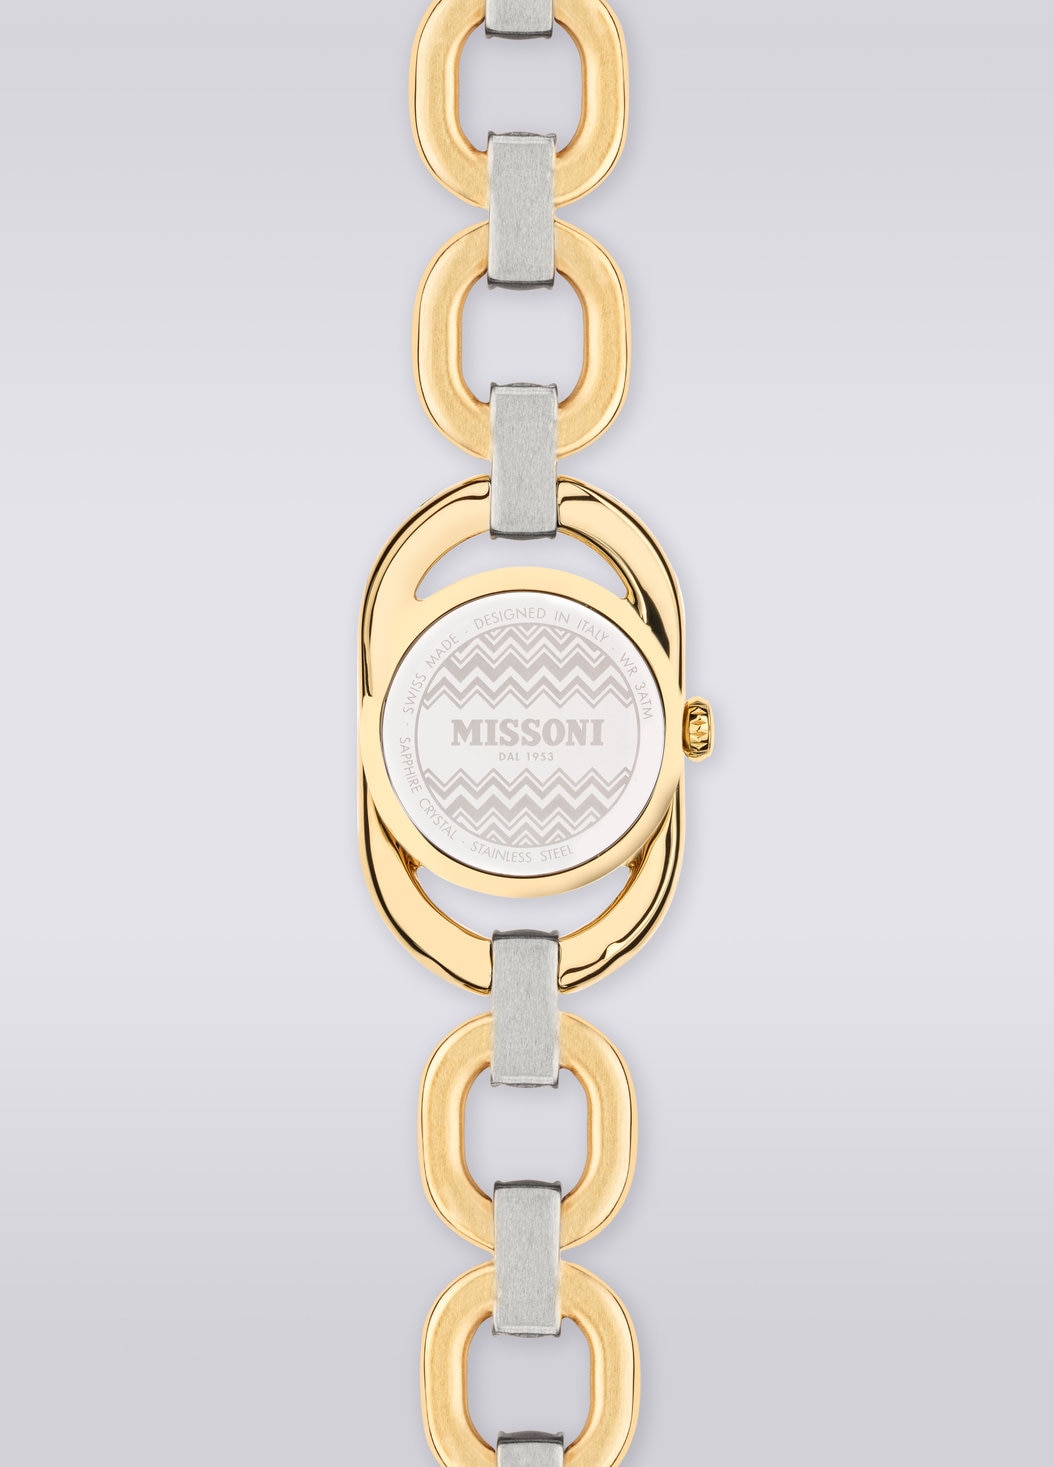 Reloj tamaño caja Missoni Gioiello Chain 22,8 MM, Multicolor  - 8053147046198 - 2